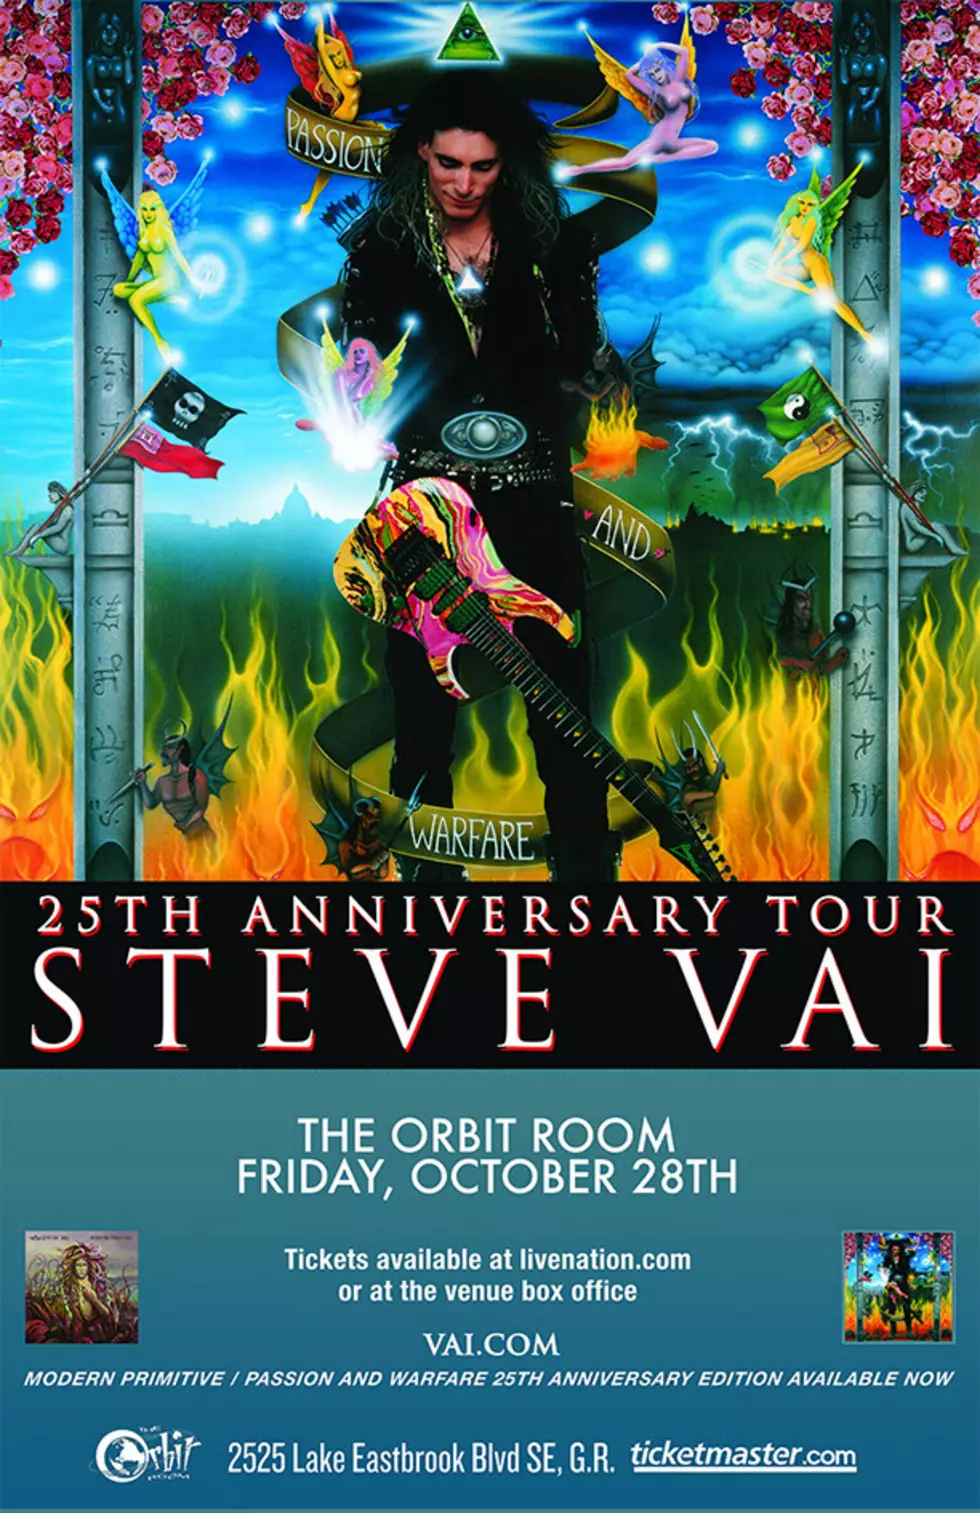 Steve Vai &#8220;Passion and Warfare&#8221; @ Orbit Room